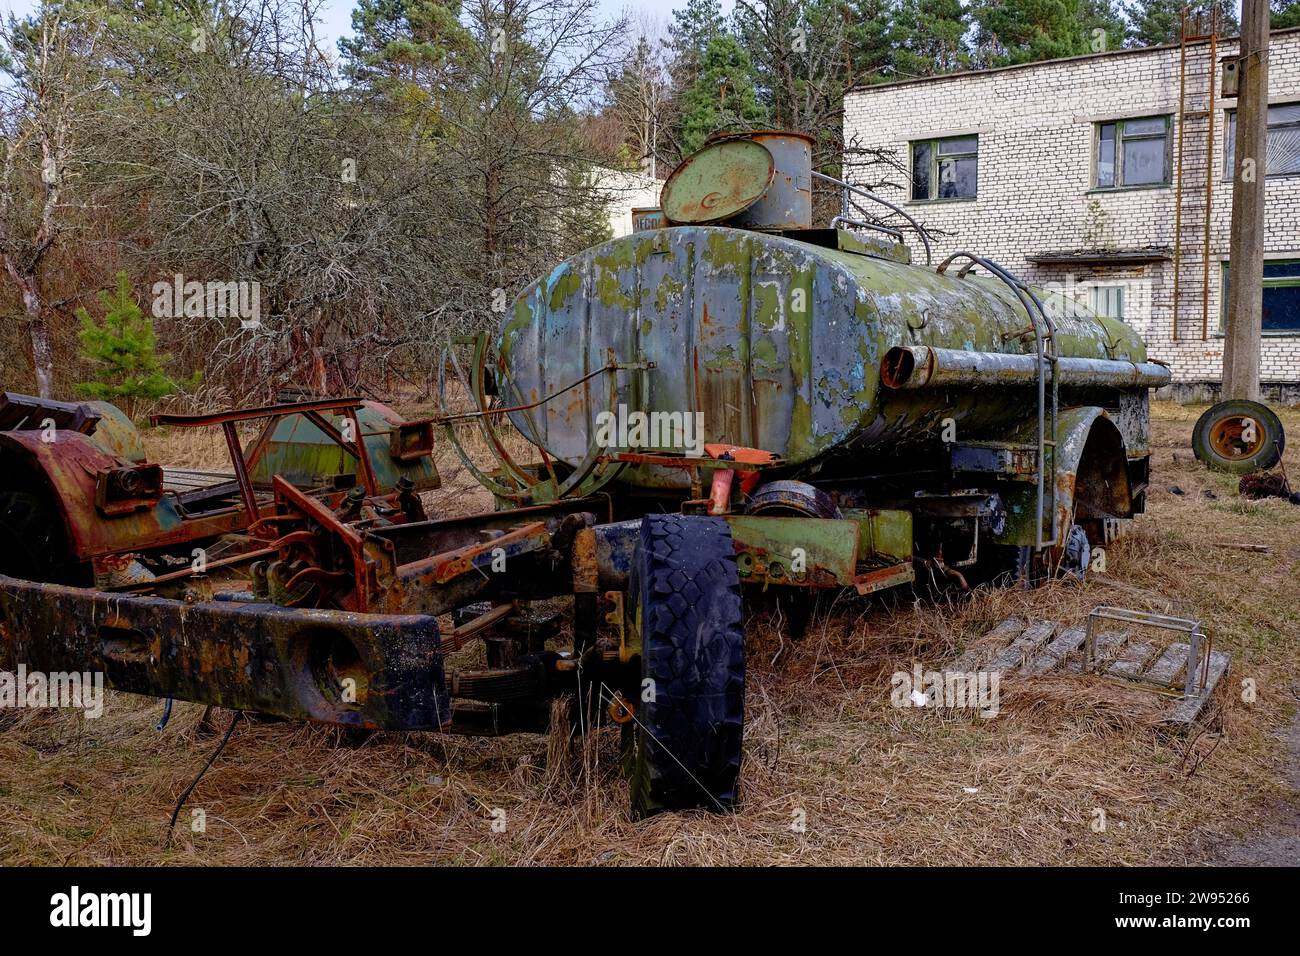 Un vieux camion-citerne rouillé abandonné dans une zone boisée. Banque D'Images